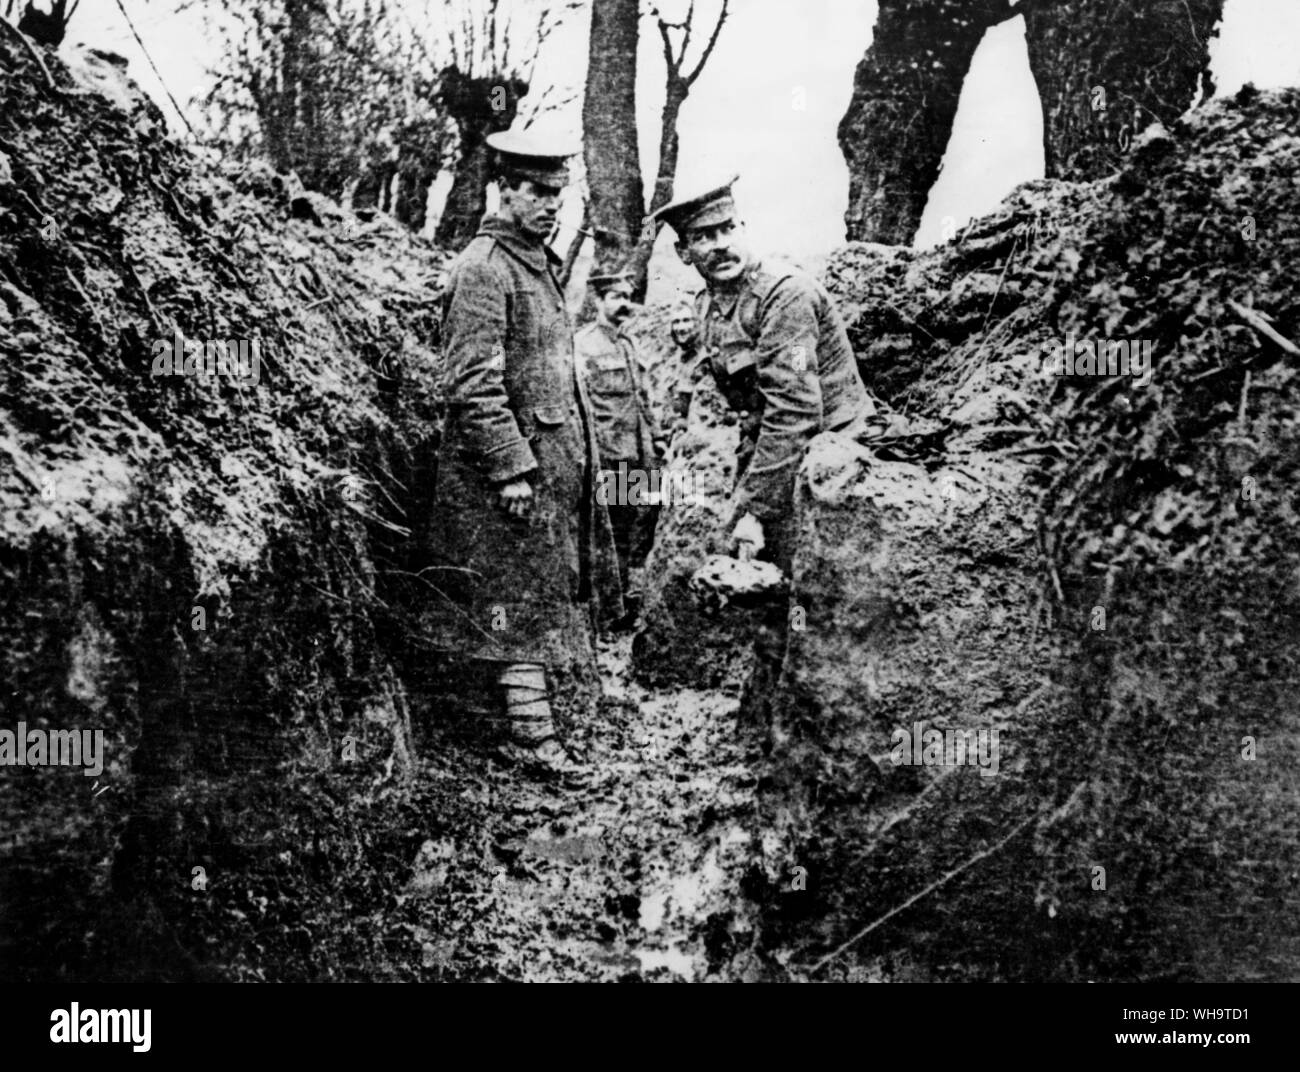 Ferme typique dans le quartier Bac St Maur, novembre 1914. Soldats alliés dans des tranchées. Banque D'Images